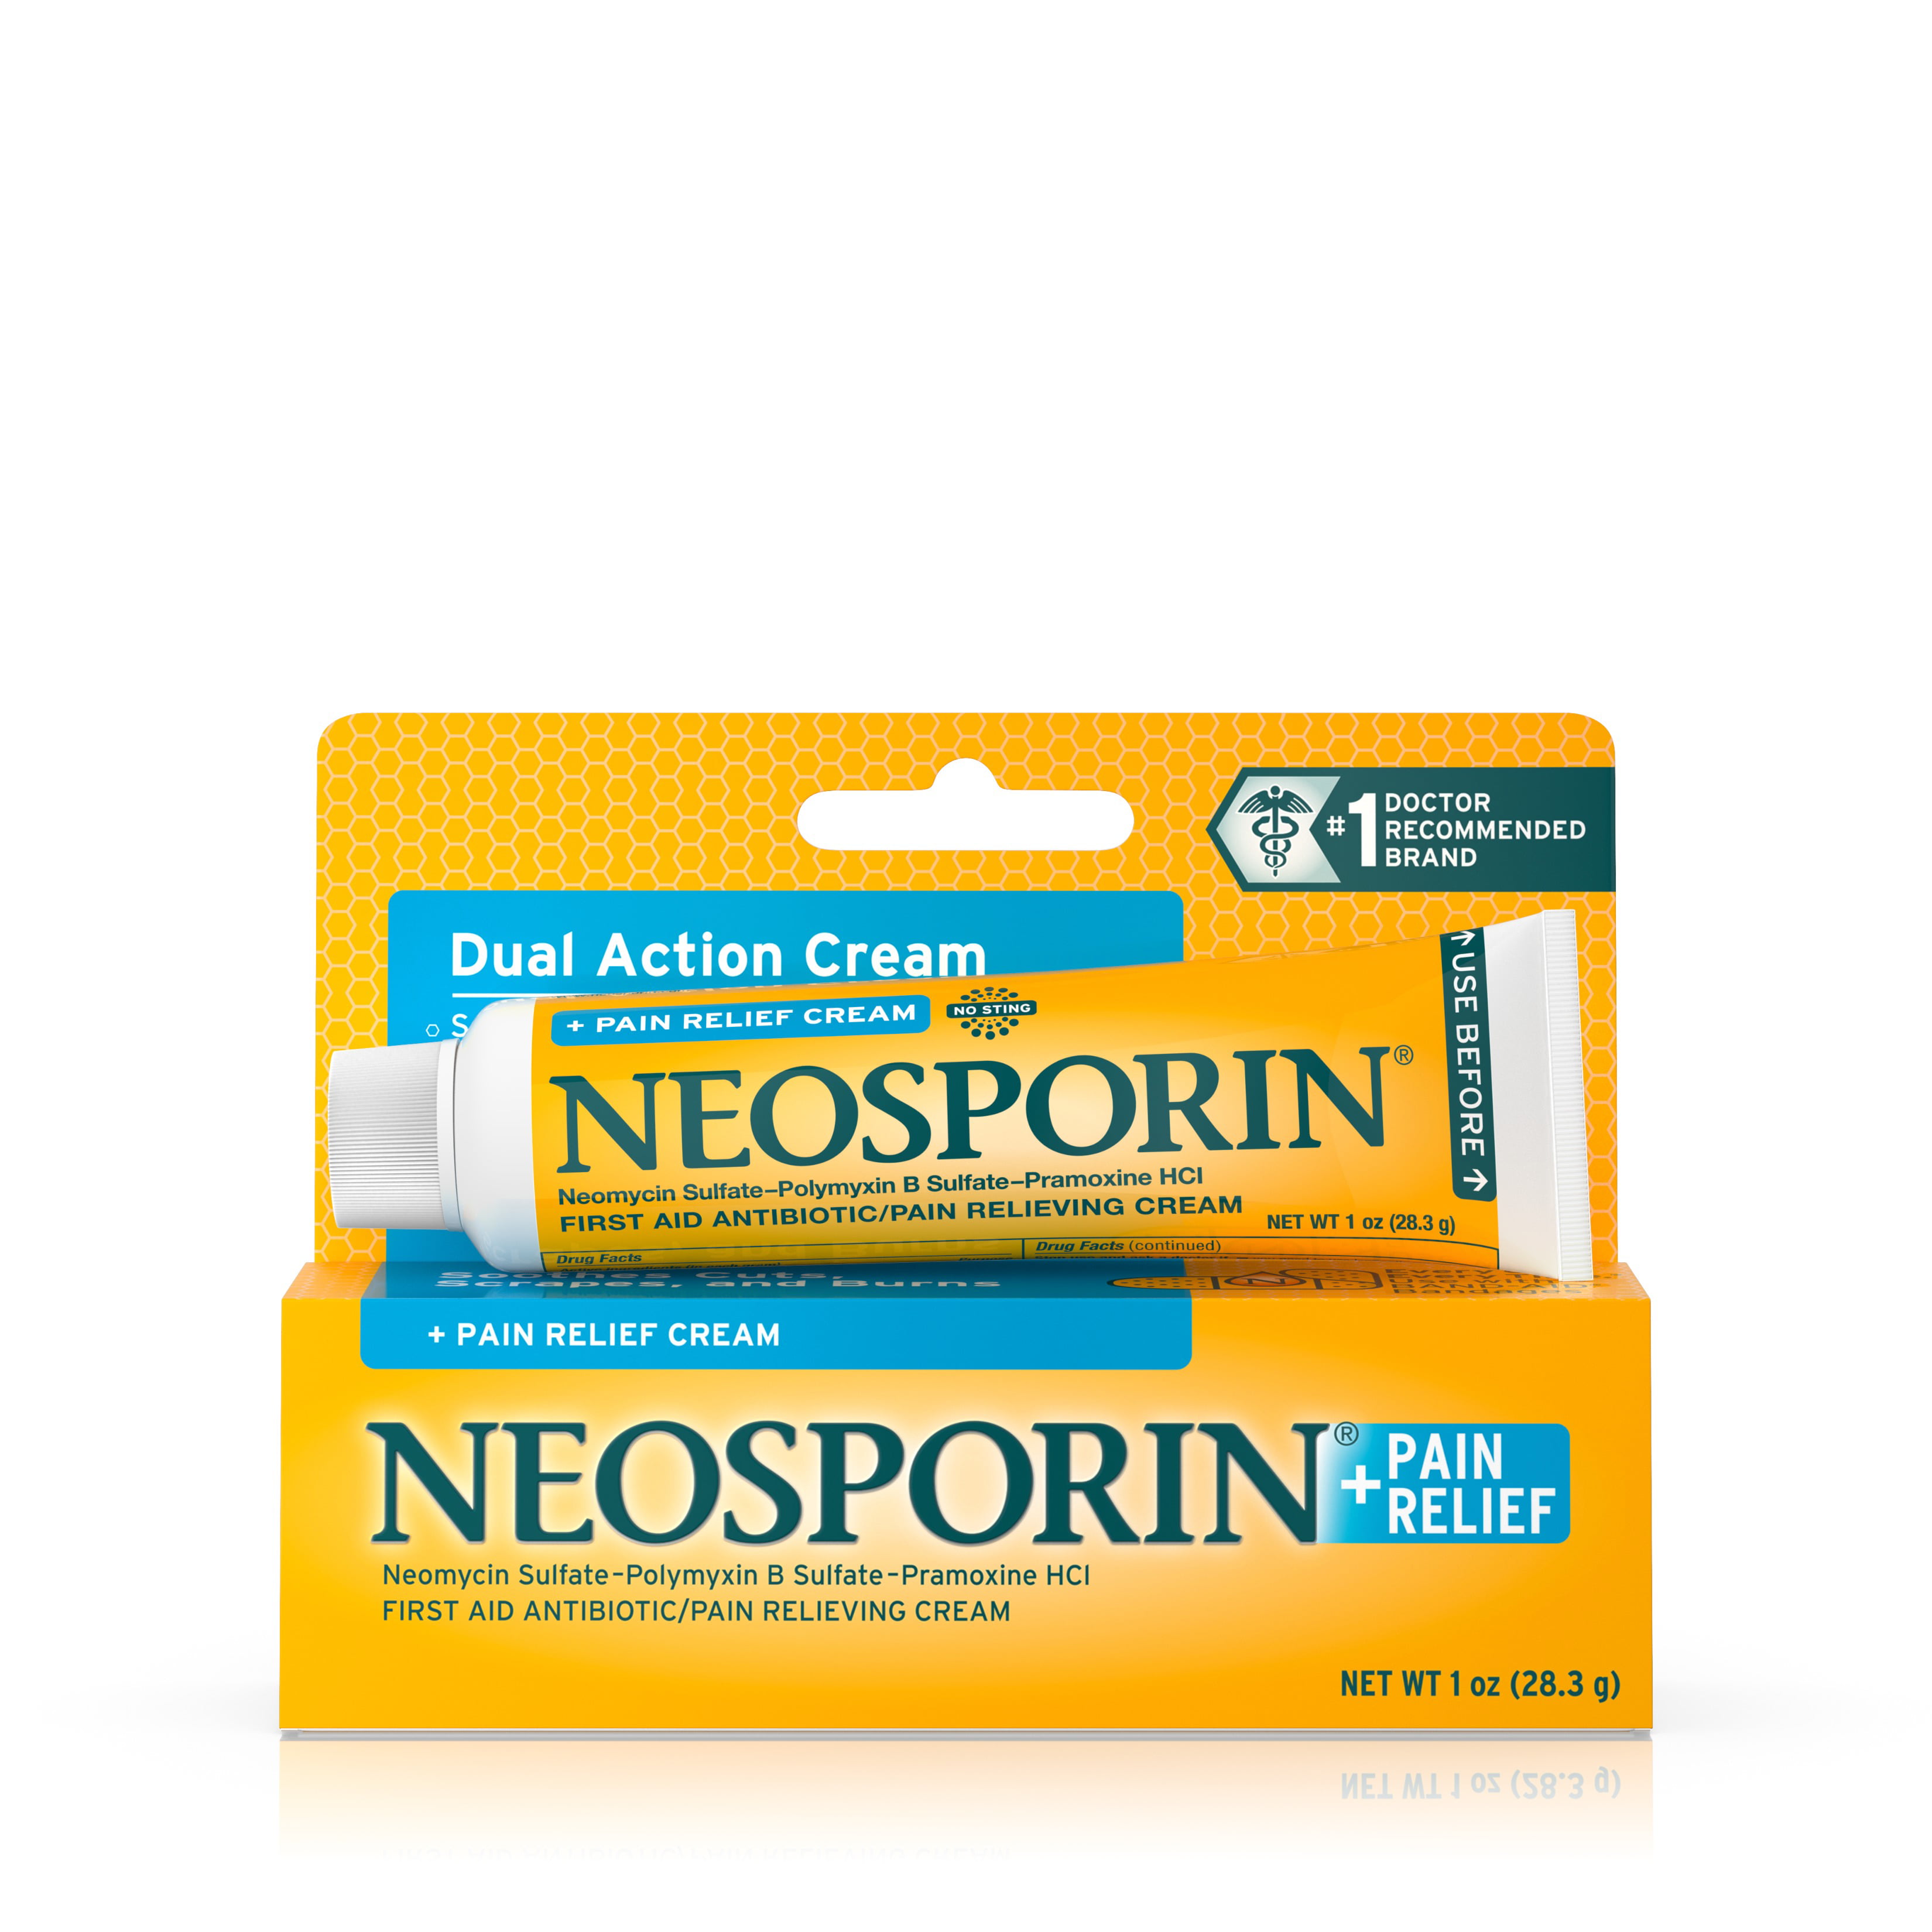 Neosporin + Pain Relief Dual Action Cream